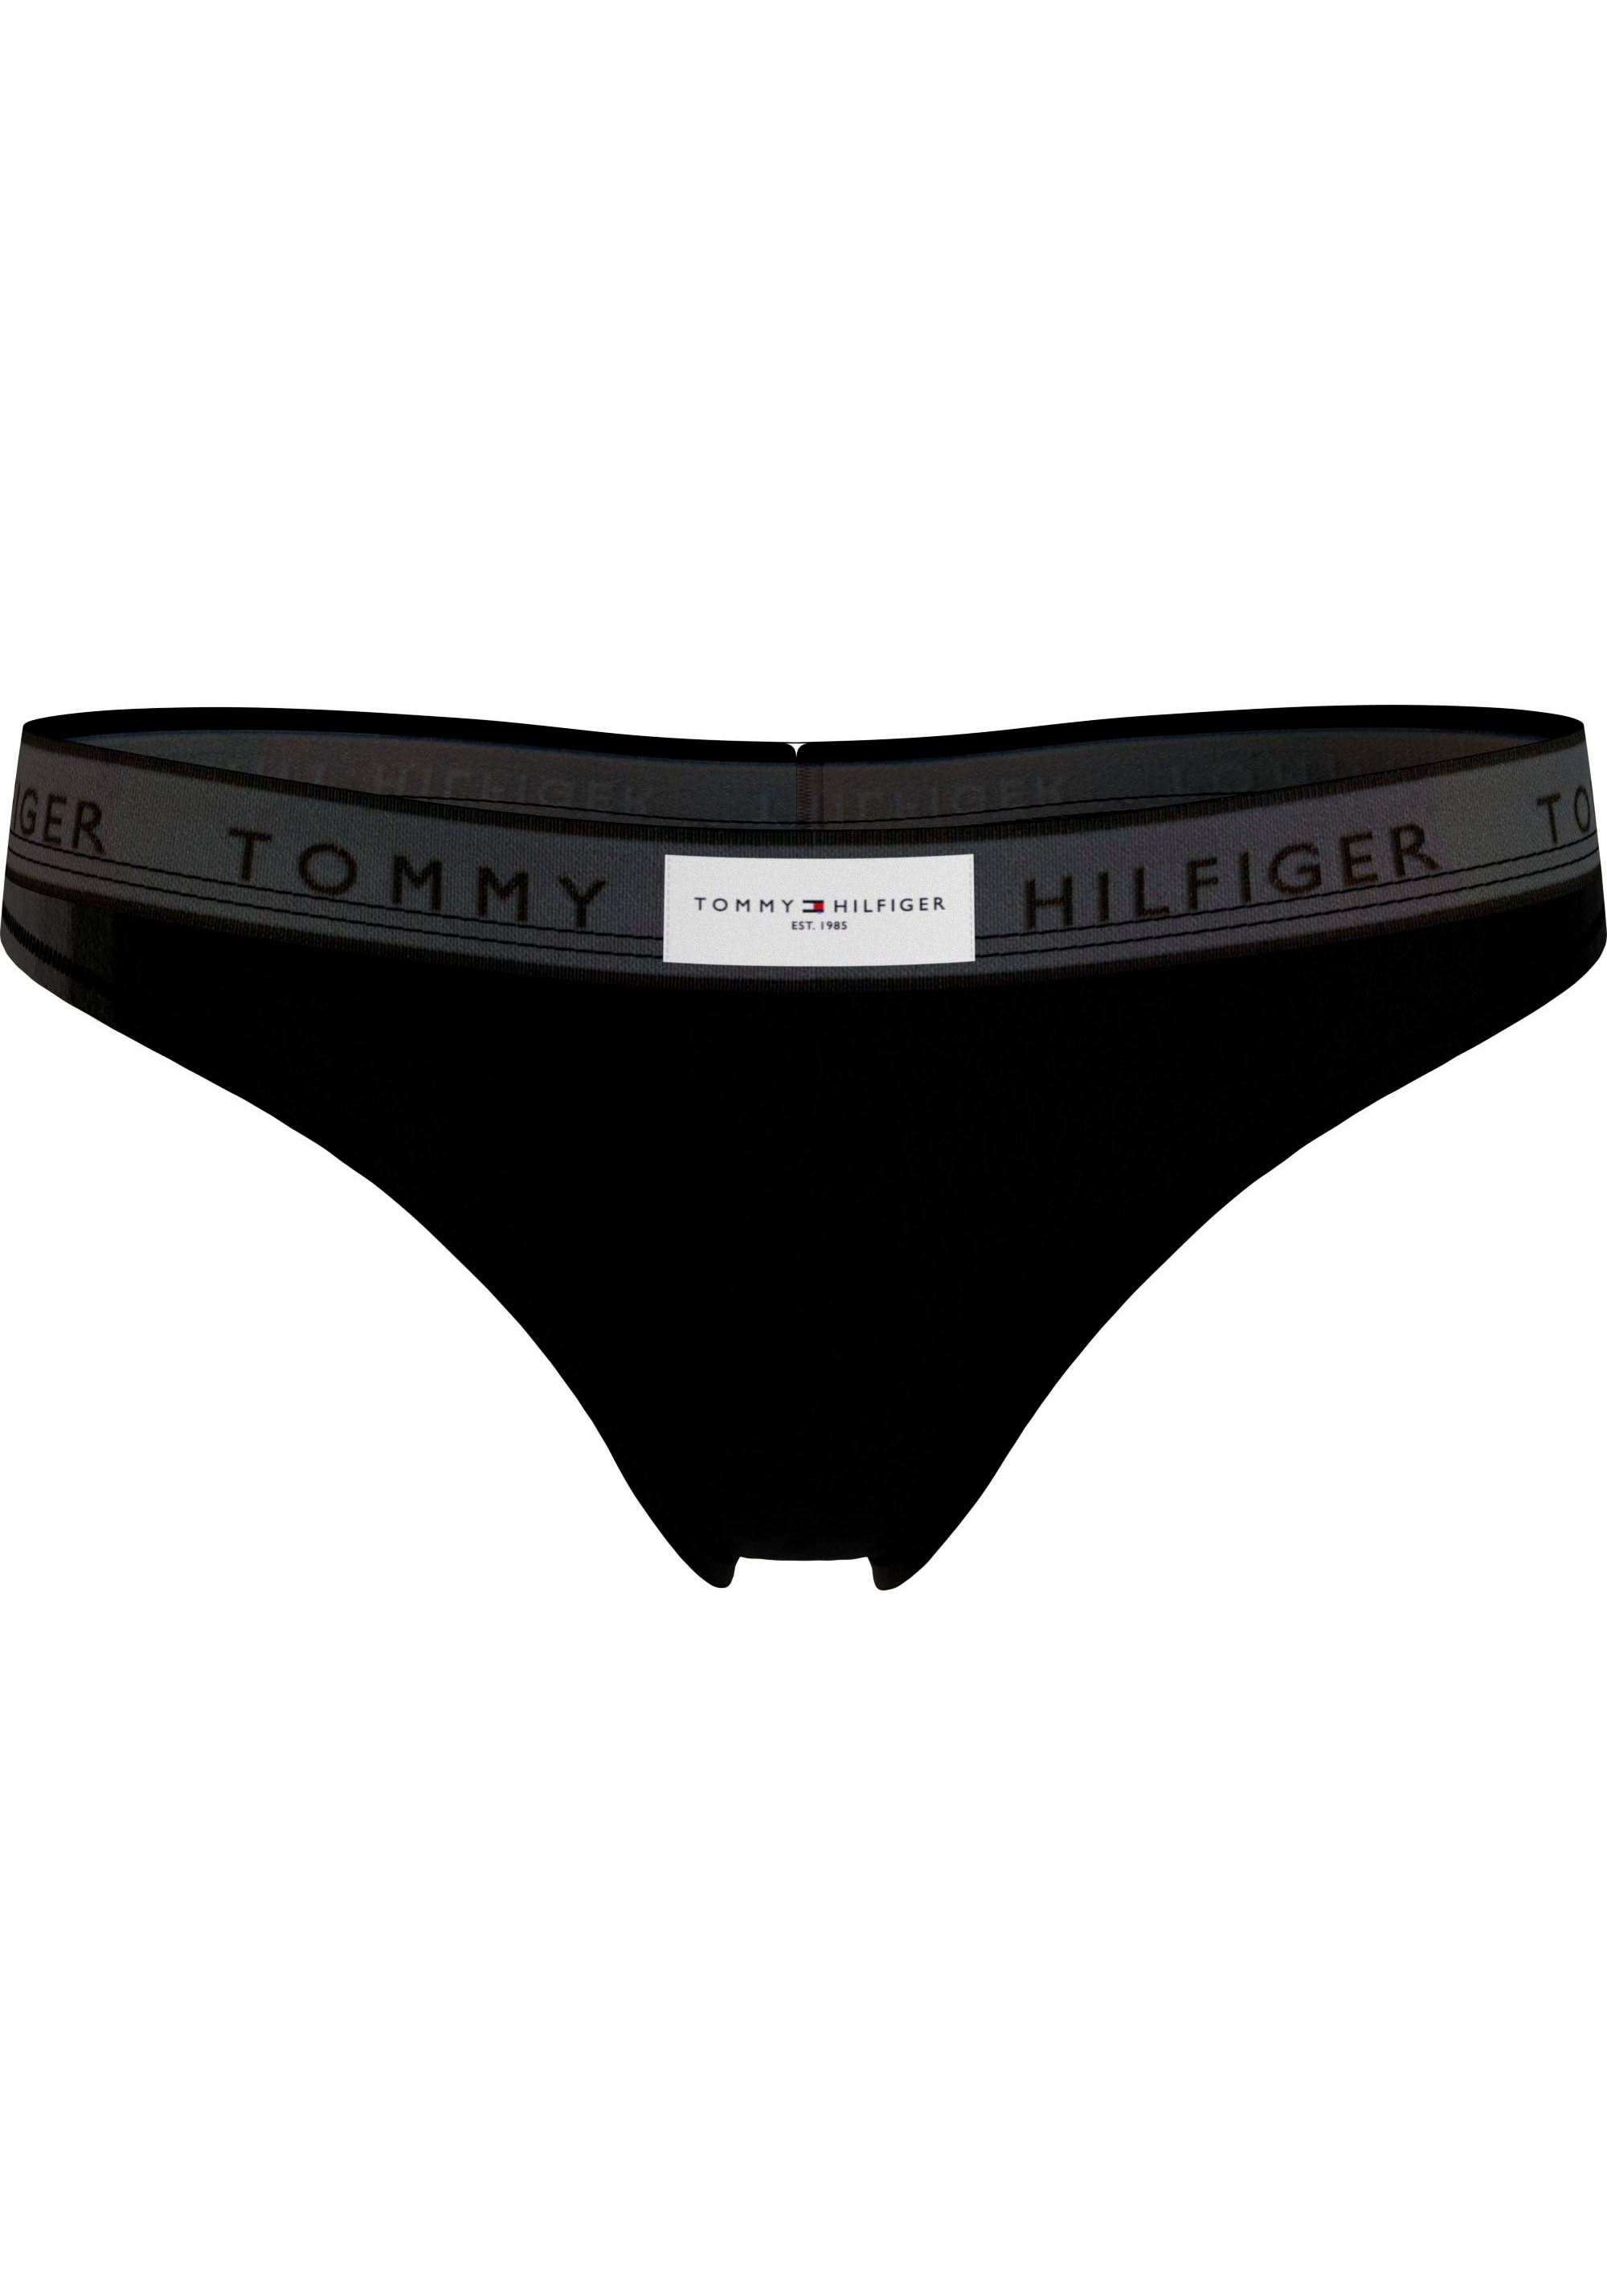 ♕ Hilfiger versandkostenfrei Hilfiger Tommy (EXT mit Underwear »THONG Tommy SIZES)«, String Logobund auf